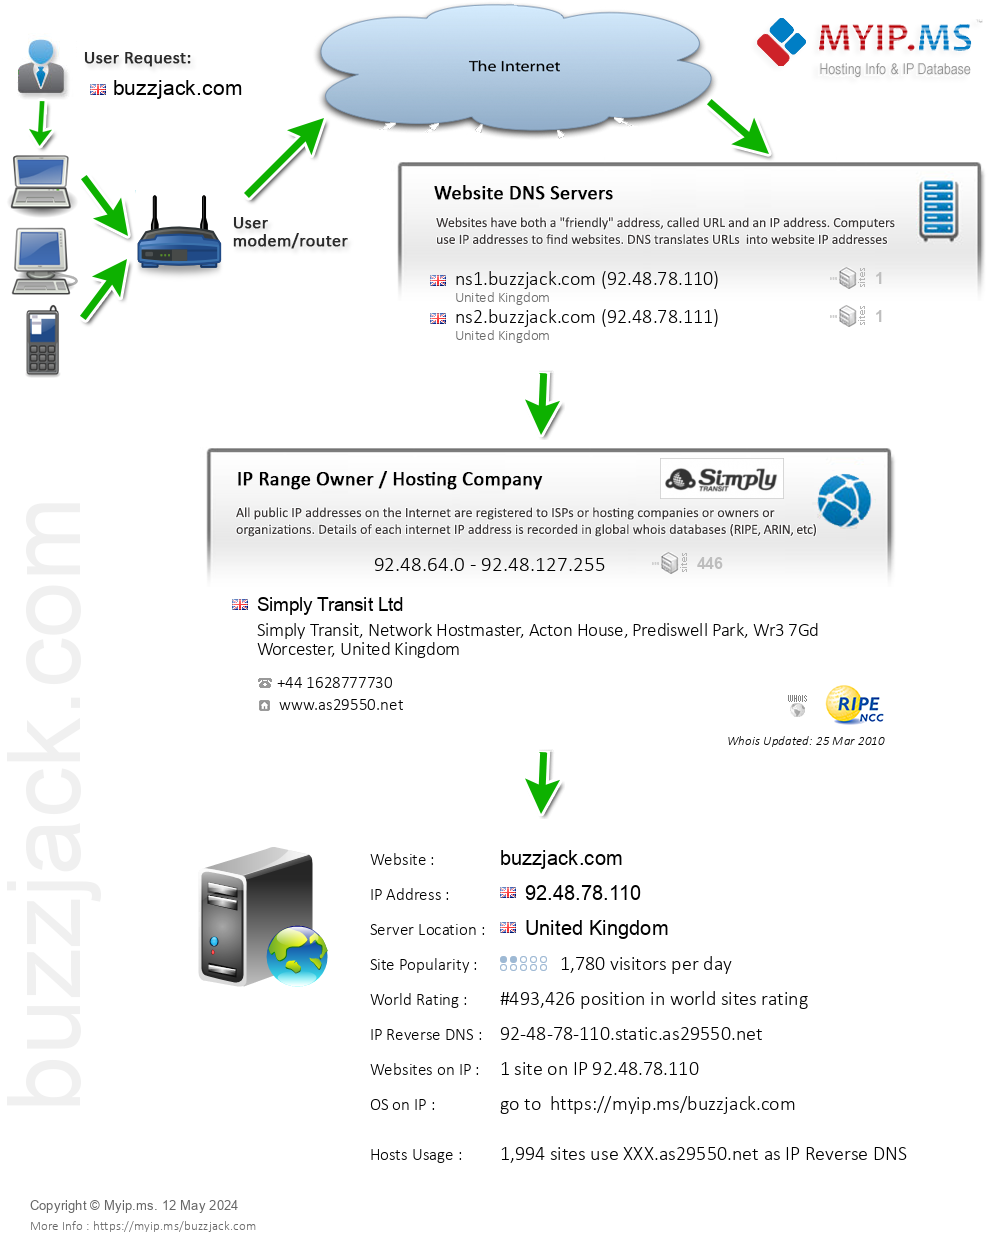 Buzzjack.com - Website Hosting Visual IP Diagram